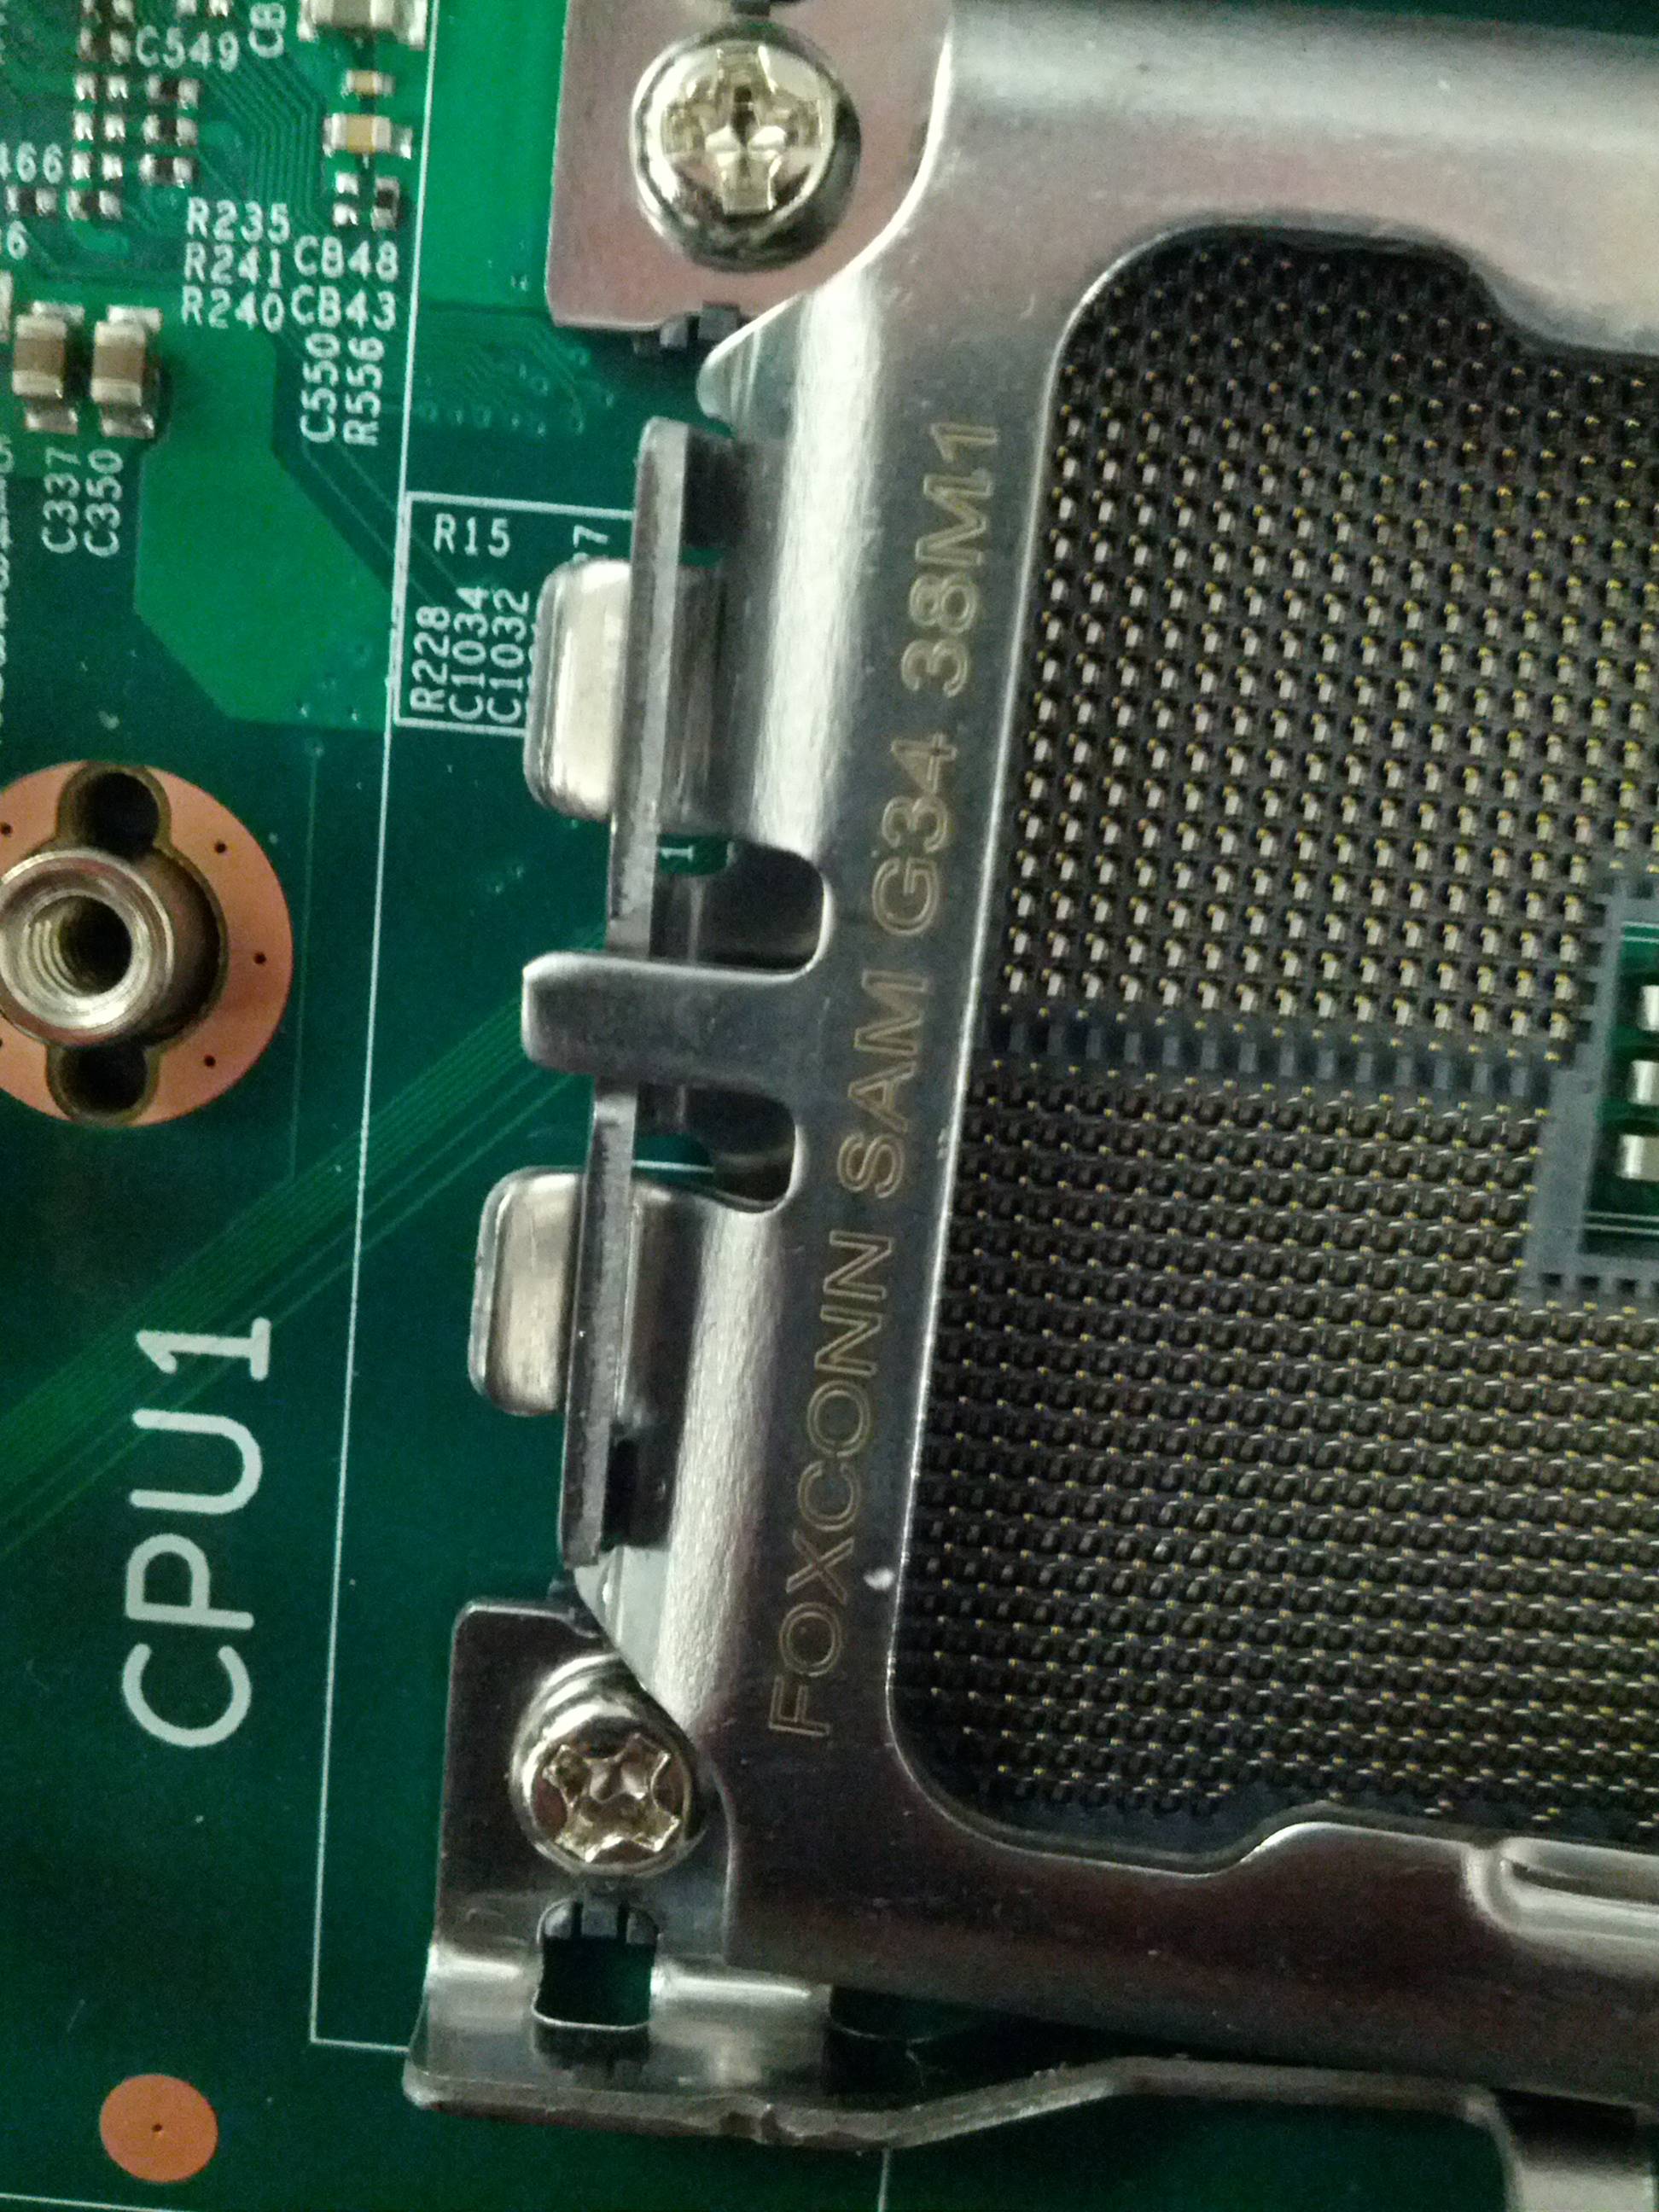 Close up of socket